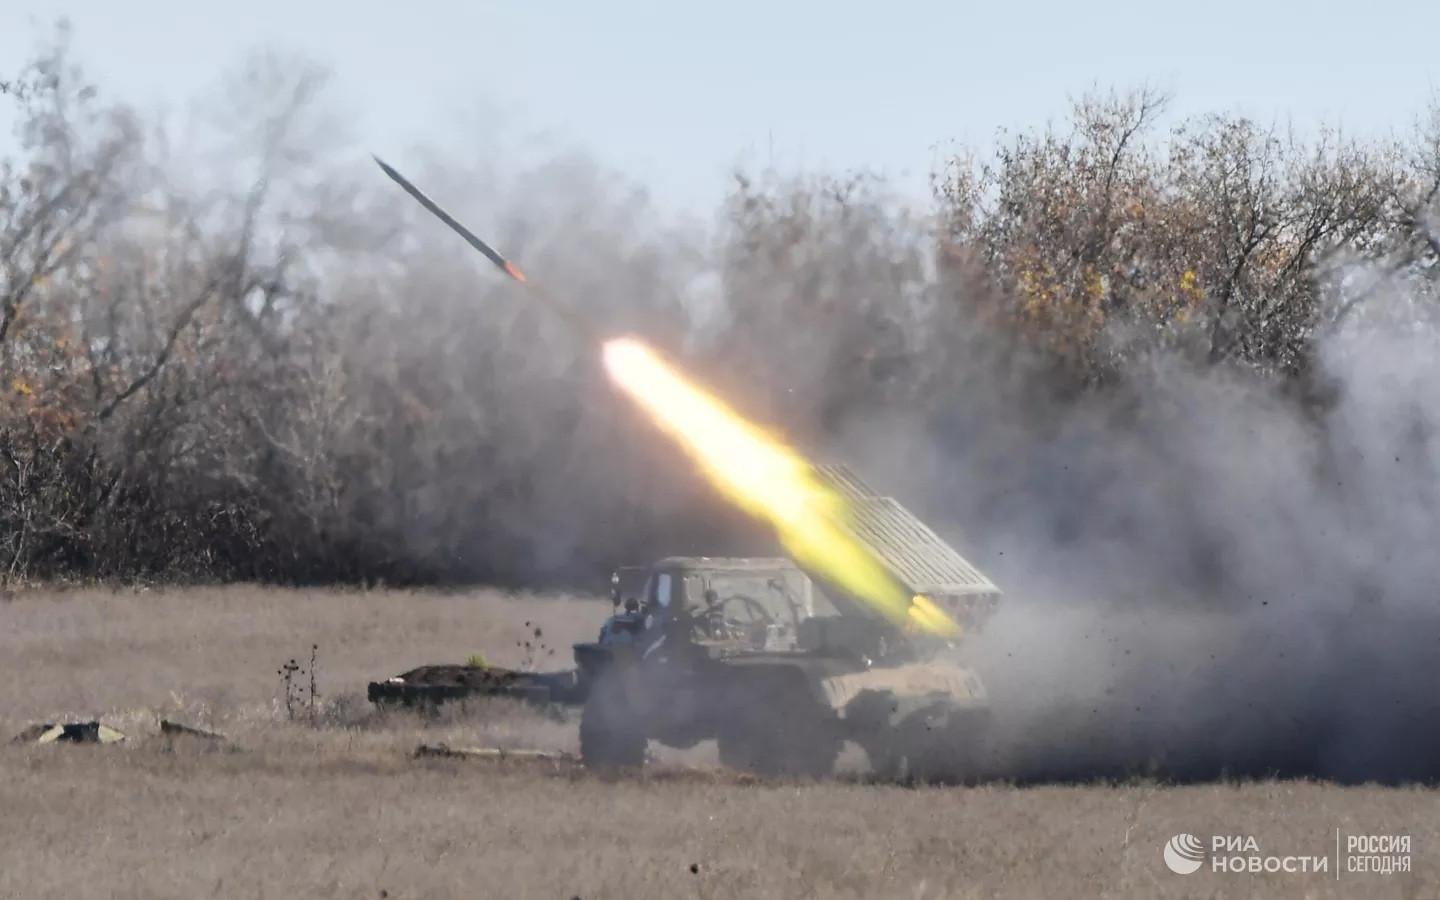 Nga tuyên bố phá hủy 5 hệ thống Patriot, EU kêu gọi tăng hỗ trợ cho Ukraine